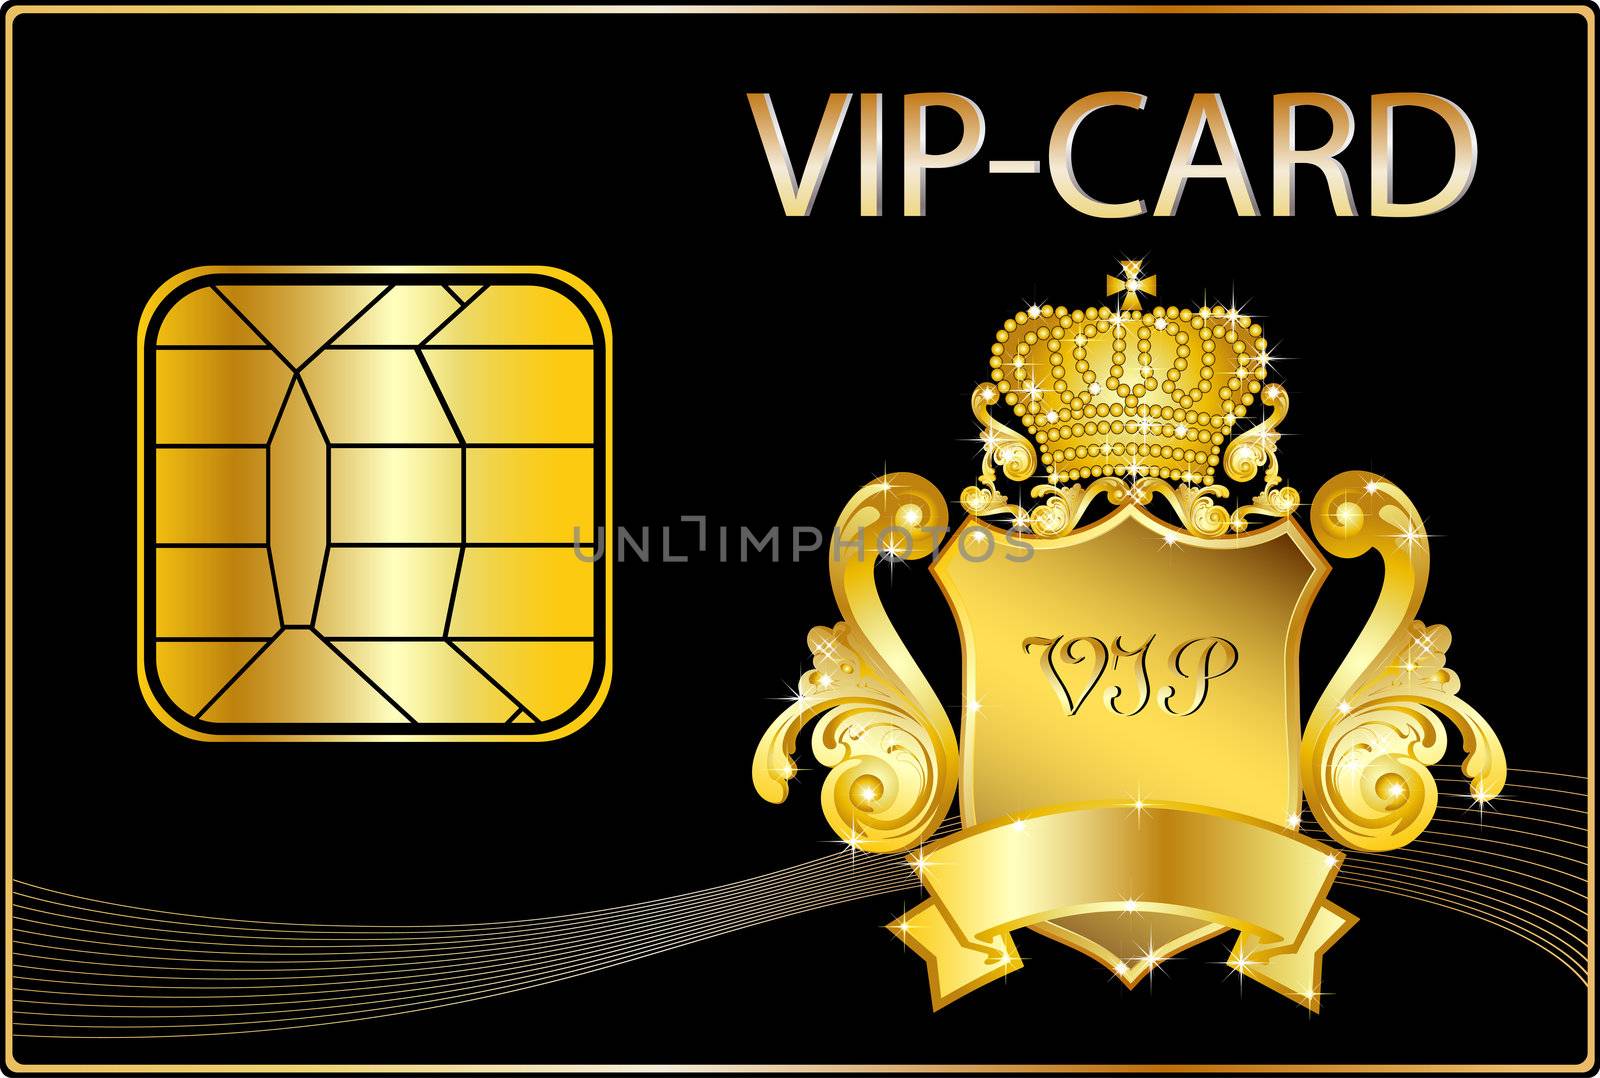 VIP Card wit a golden crest